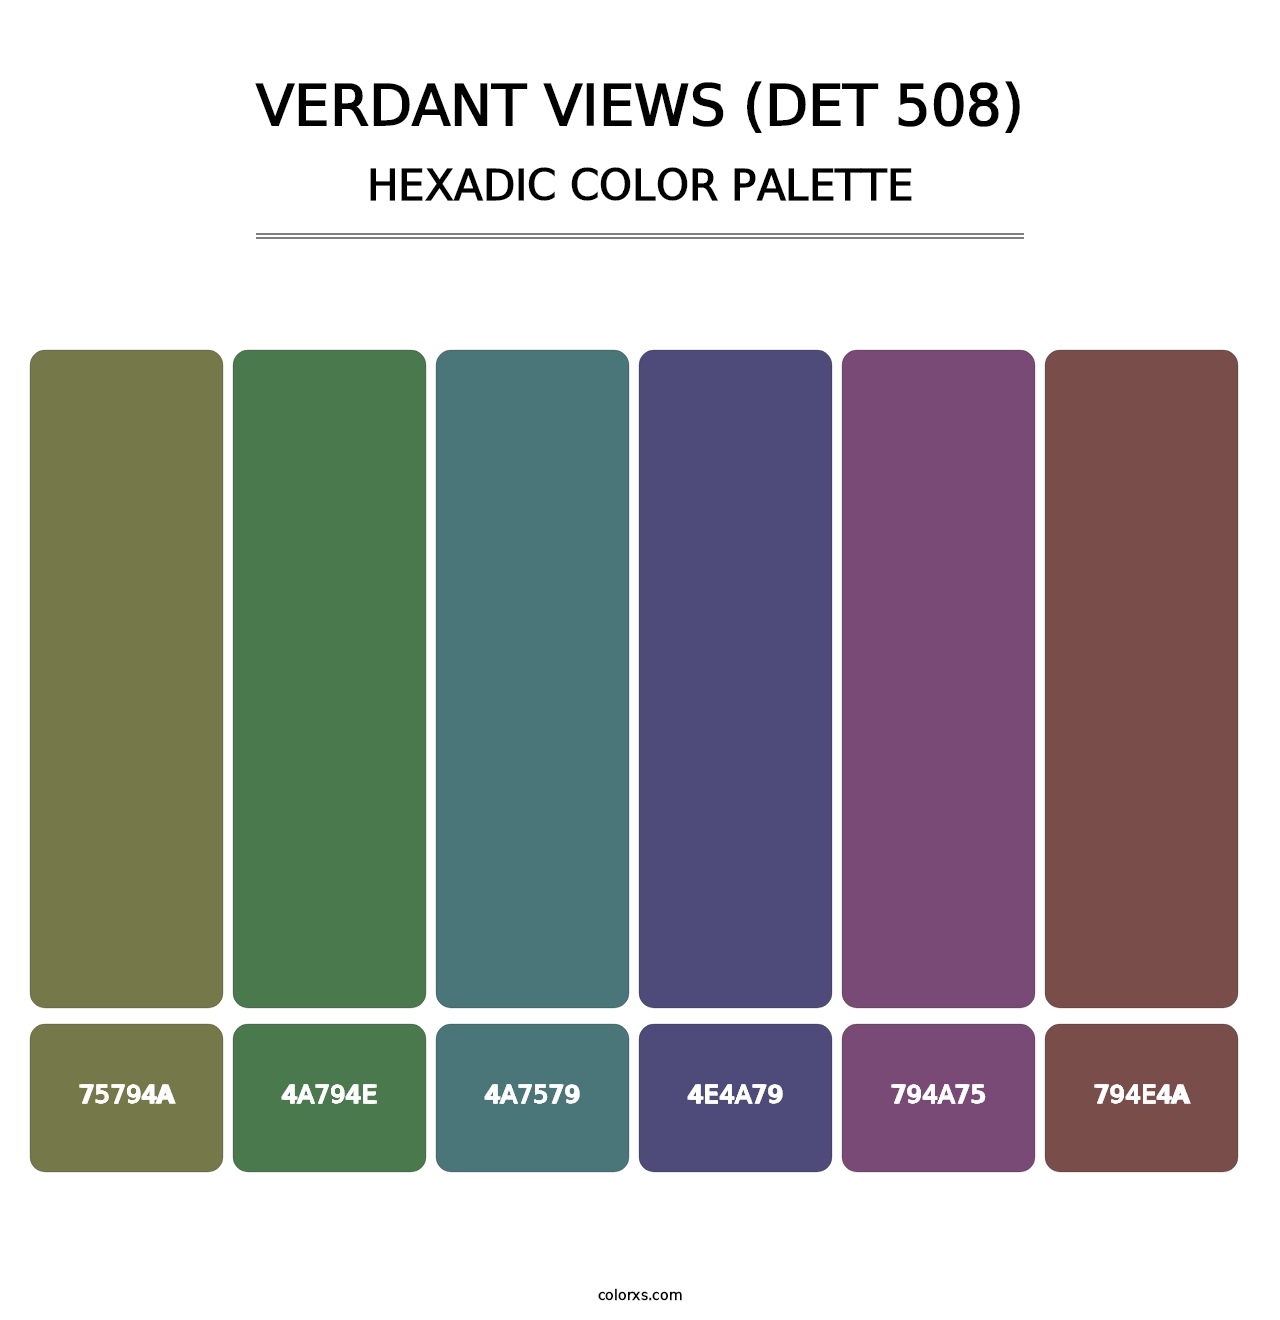 Verdant Views (DET 508) - Hexadic Color Palette